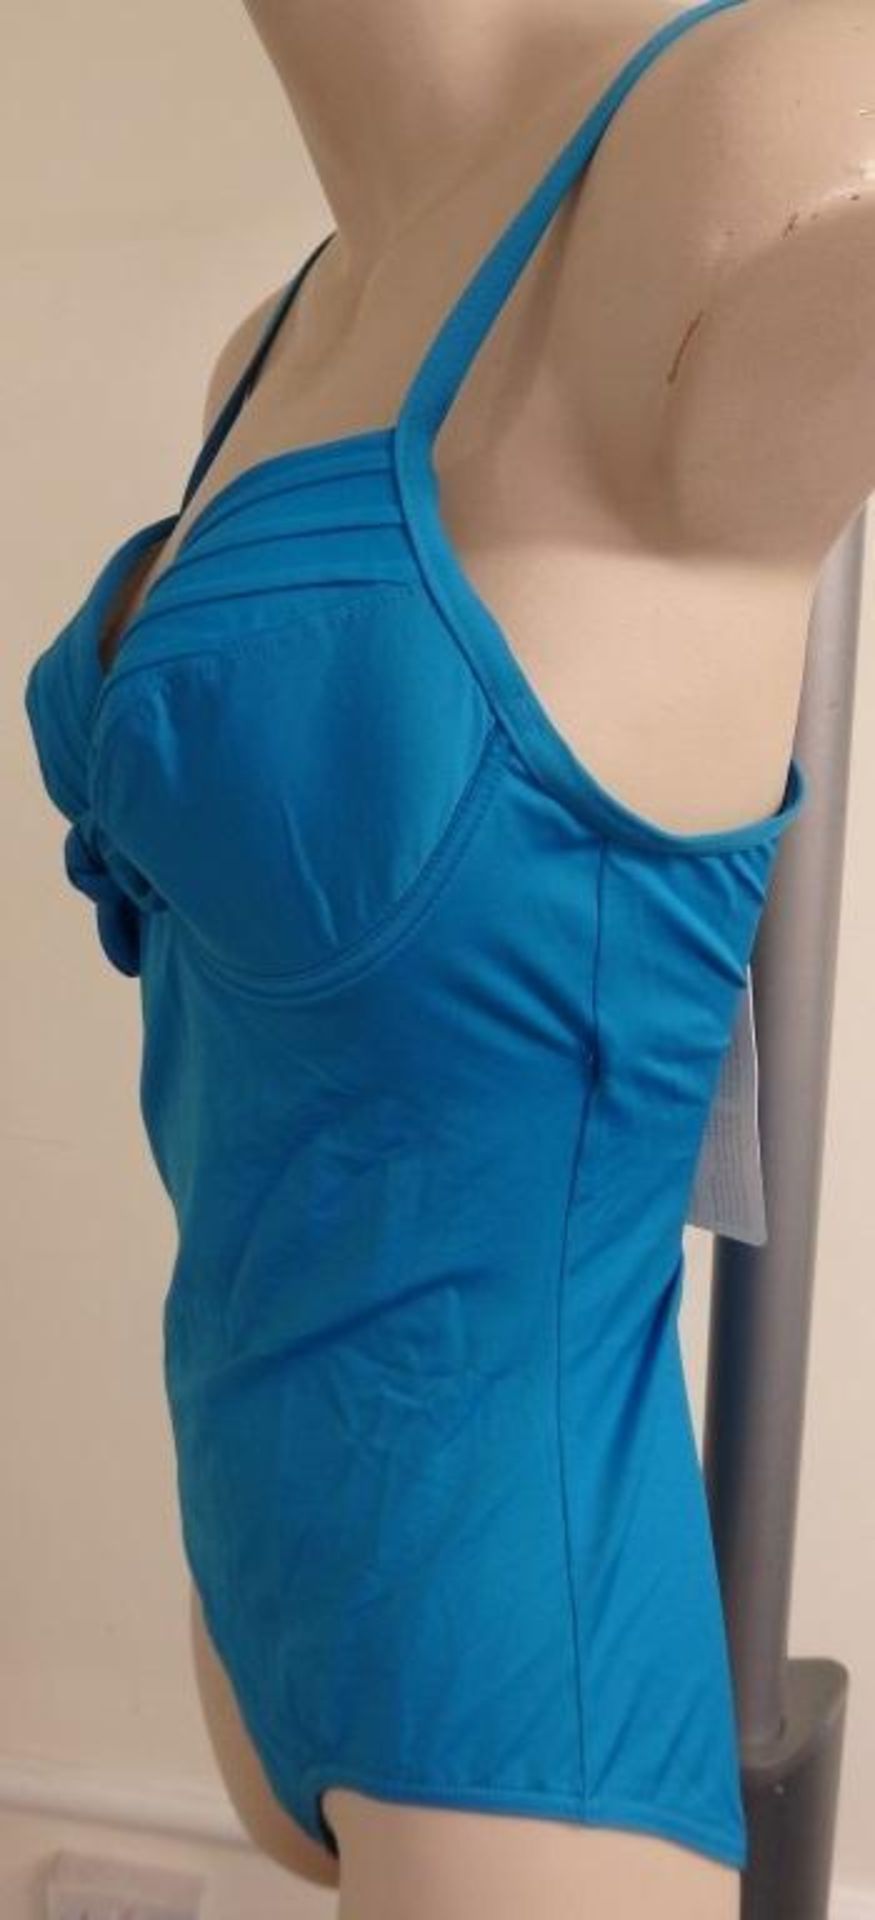 1 x Rasurel - Turquoise -Touquet balconnet Swimsuit - R20232 - Size 2C - UK 32 - Fr 85 - EU/Int 70 - Image 9 of 9